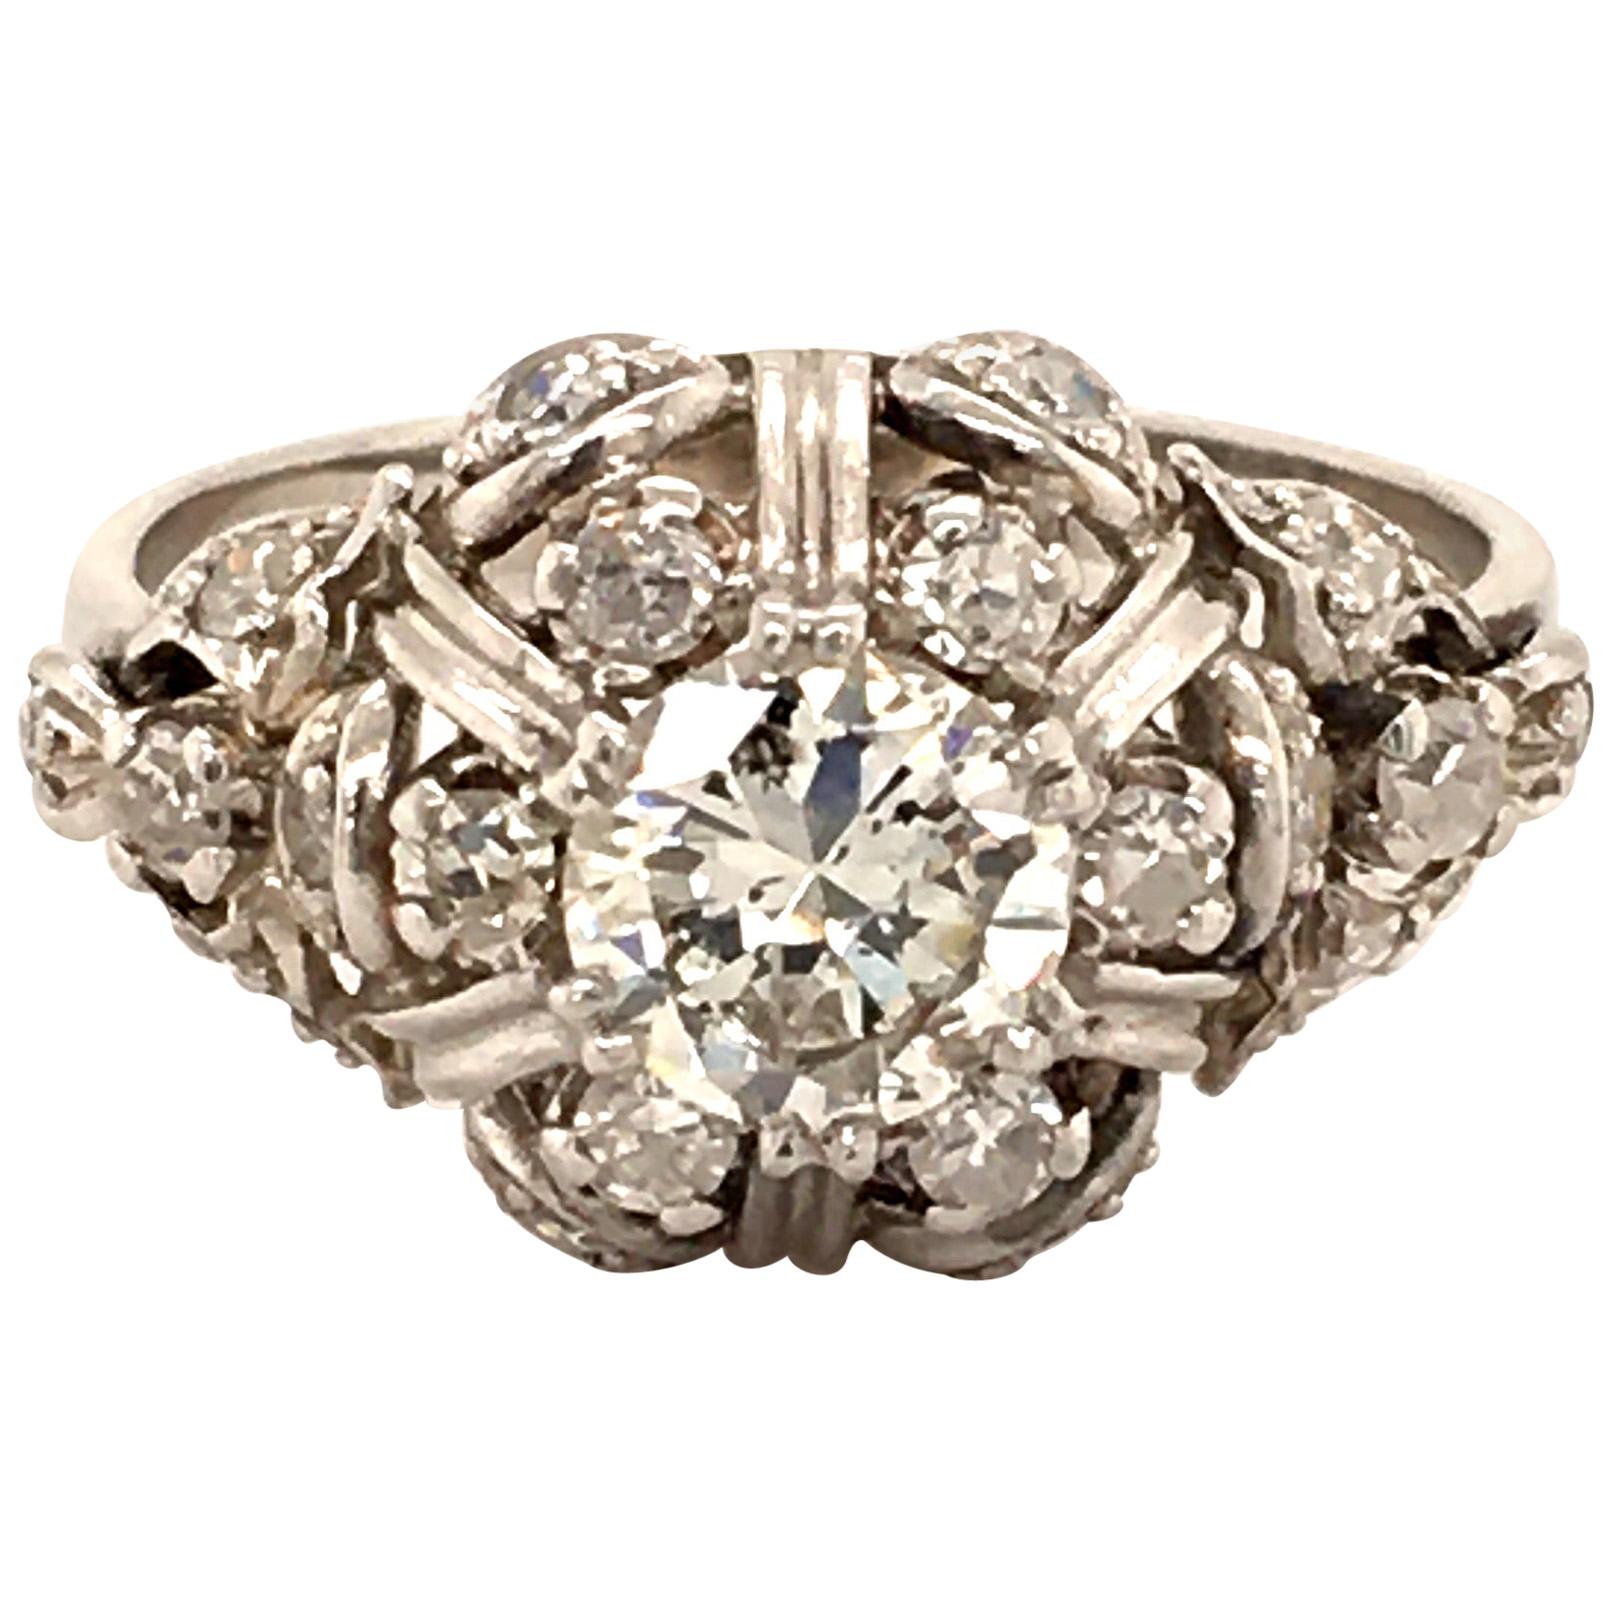 Unique Diamond Ring in Platinum 950